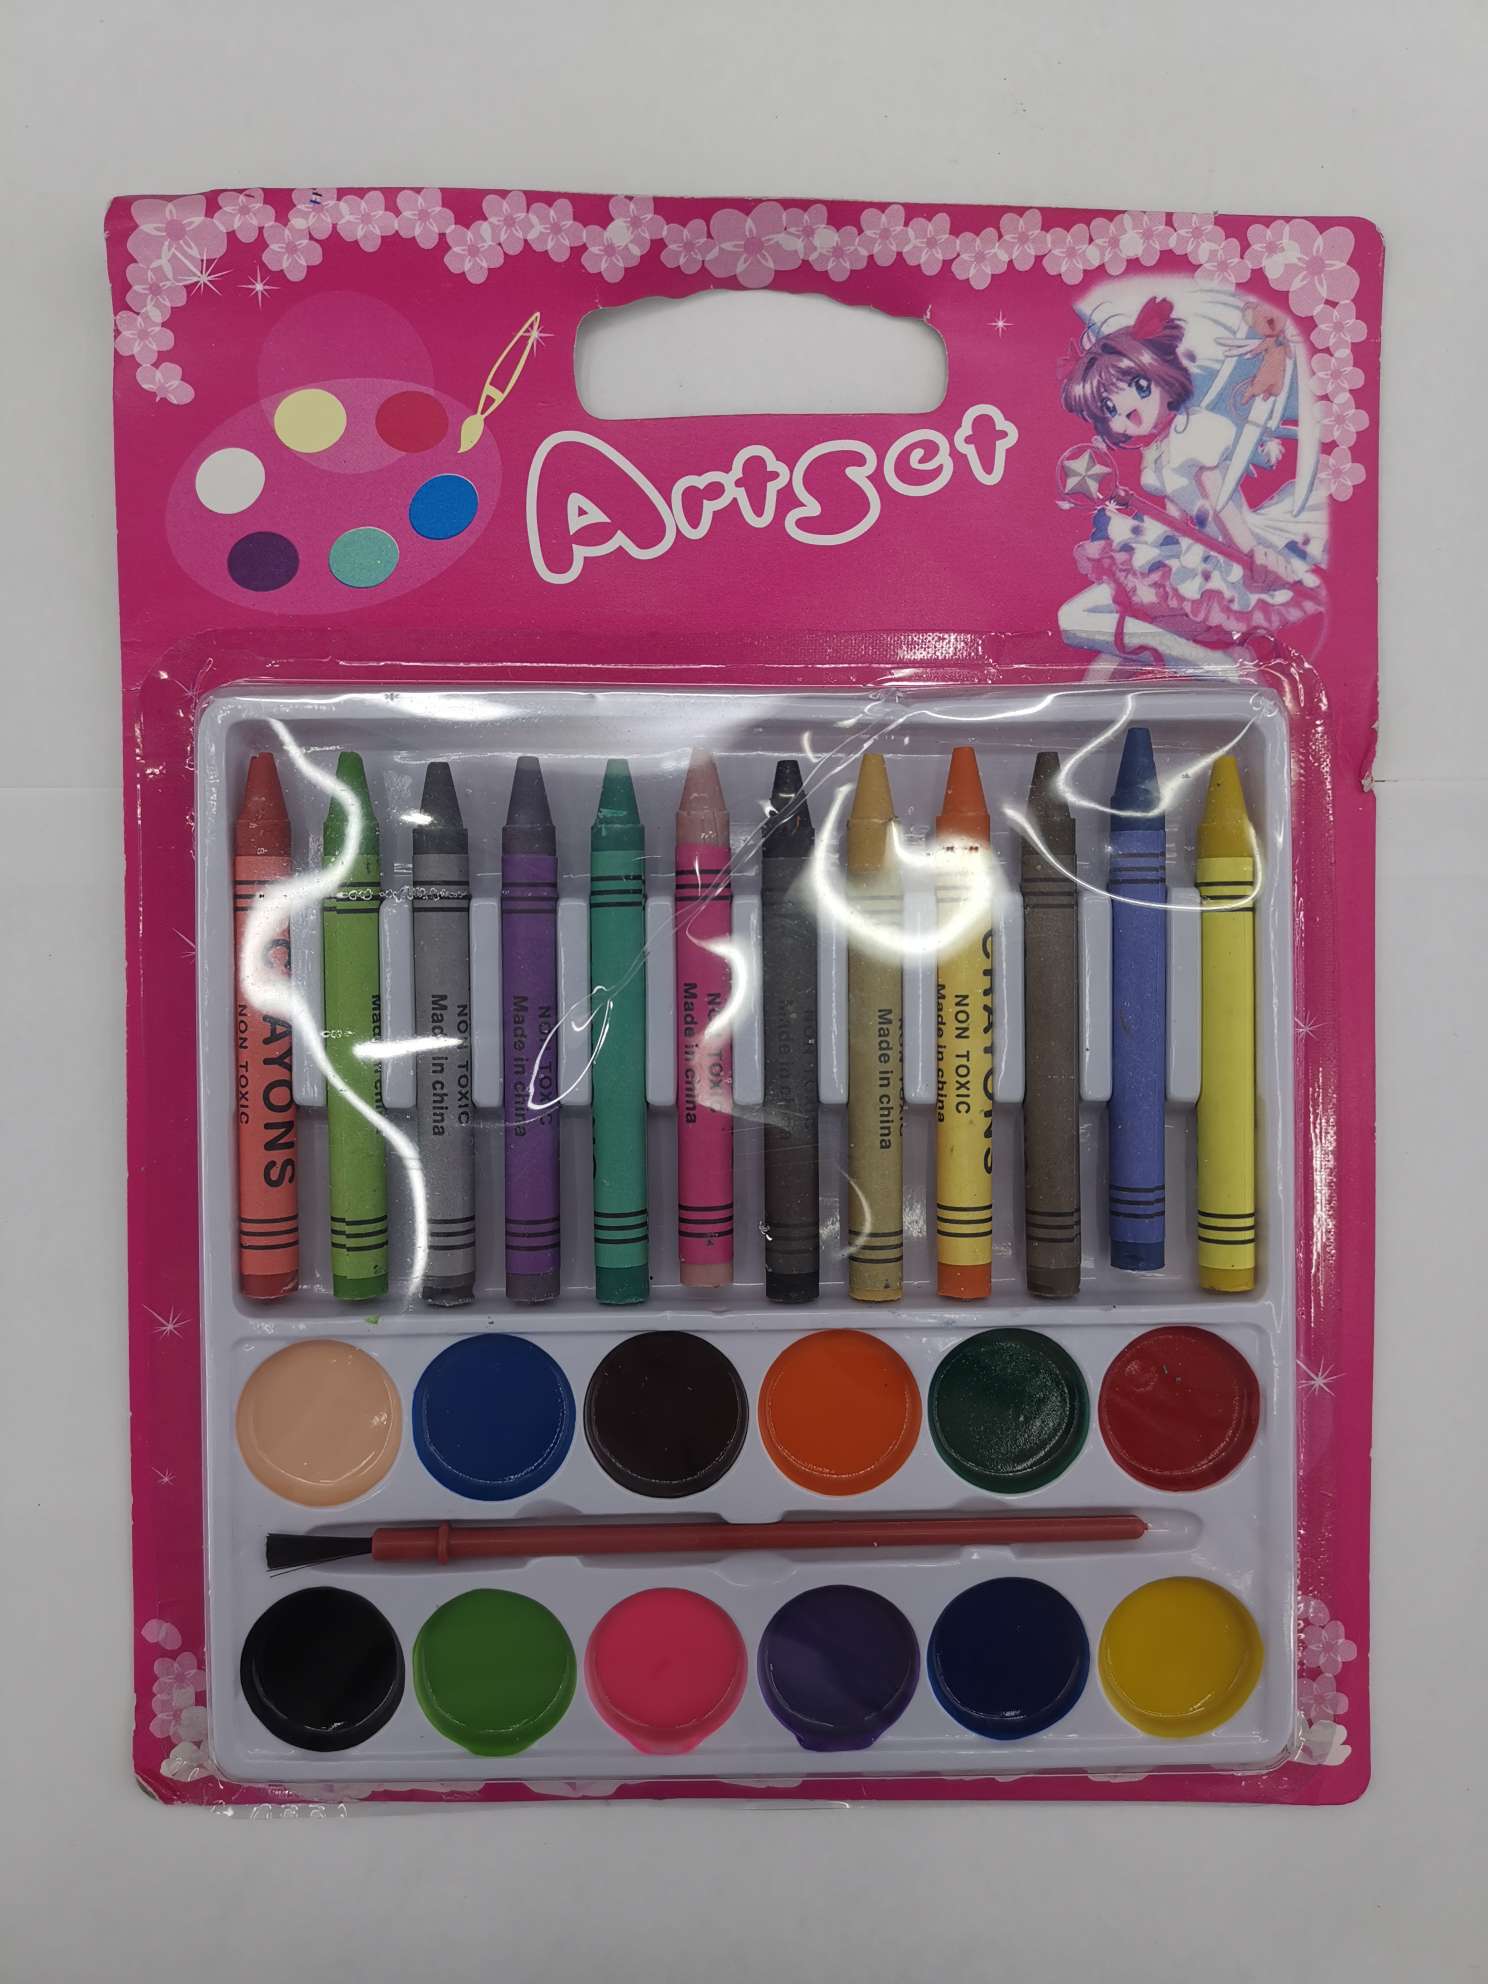 12色蜡笔+12色半干颜料/粉饼儿童绘画用品绘画套装安全环保批发